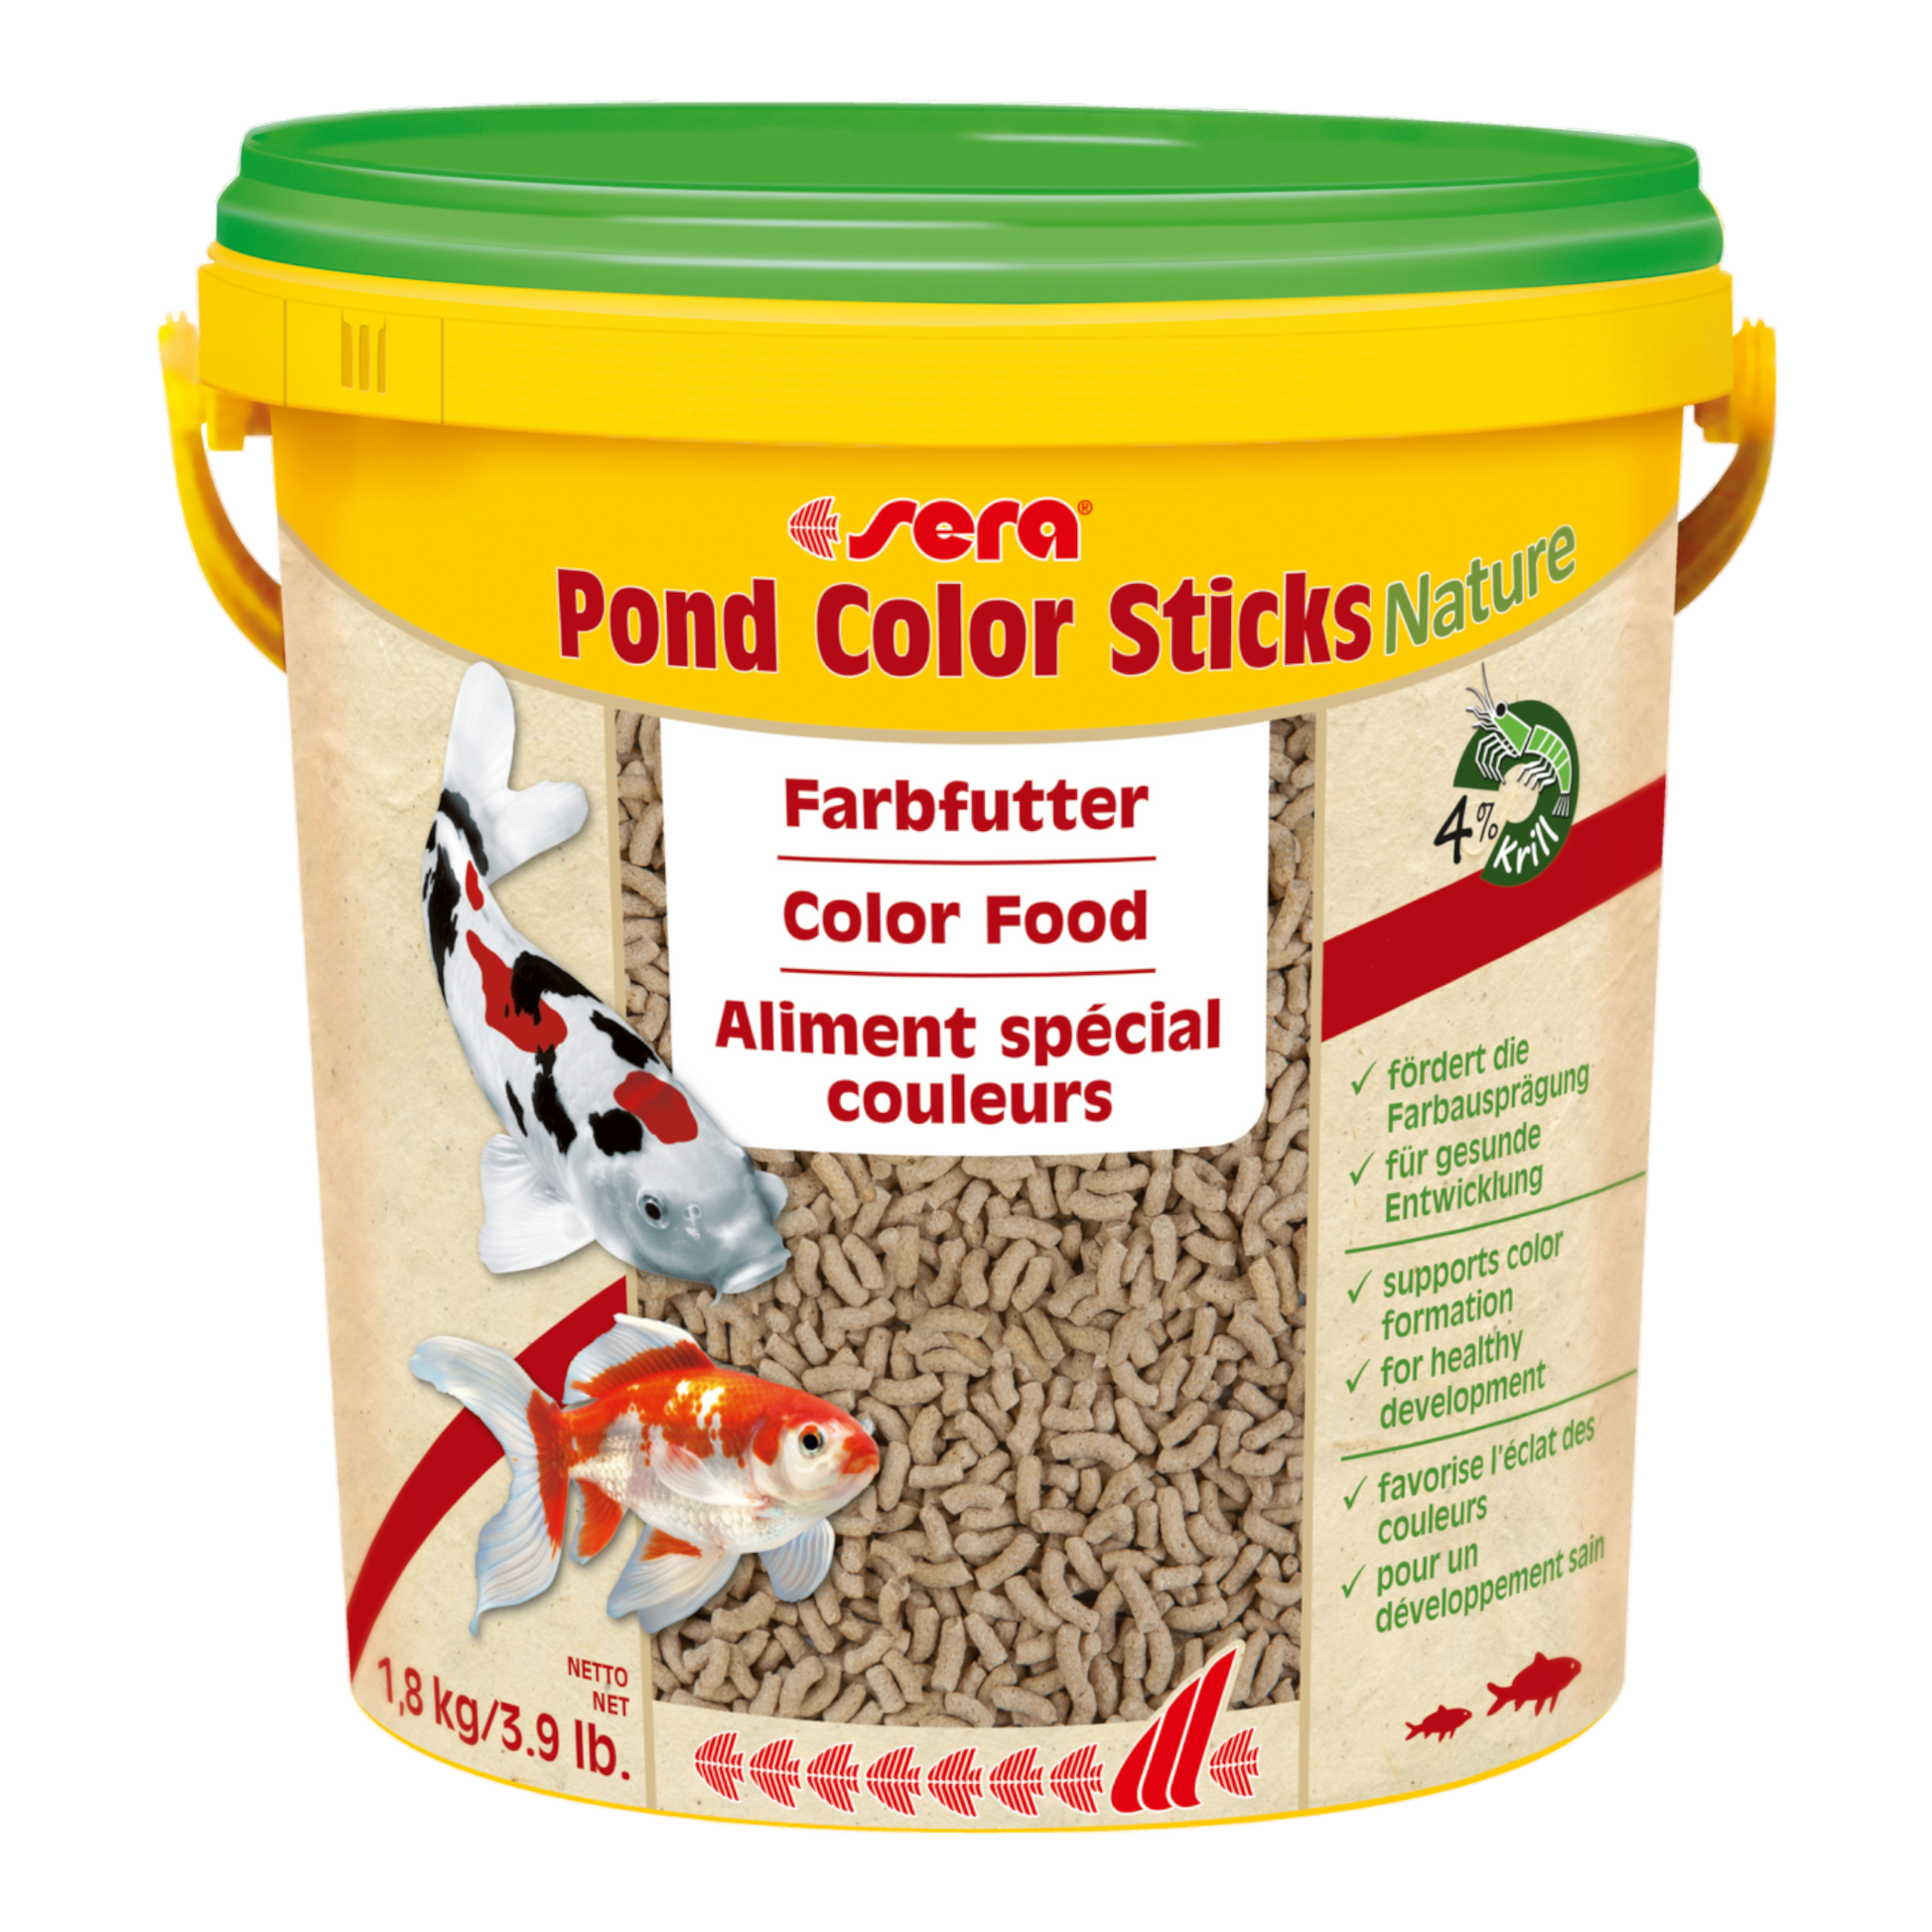 sera Pond Color Sticks Nature ist das Farbfutter aus schonend hergestelltem Granulat ohne Farb- und Konservierungsstoffe für Teichfische.